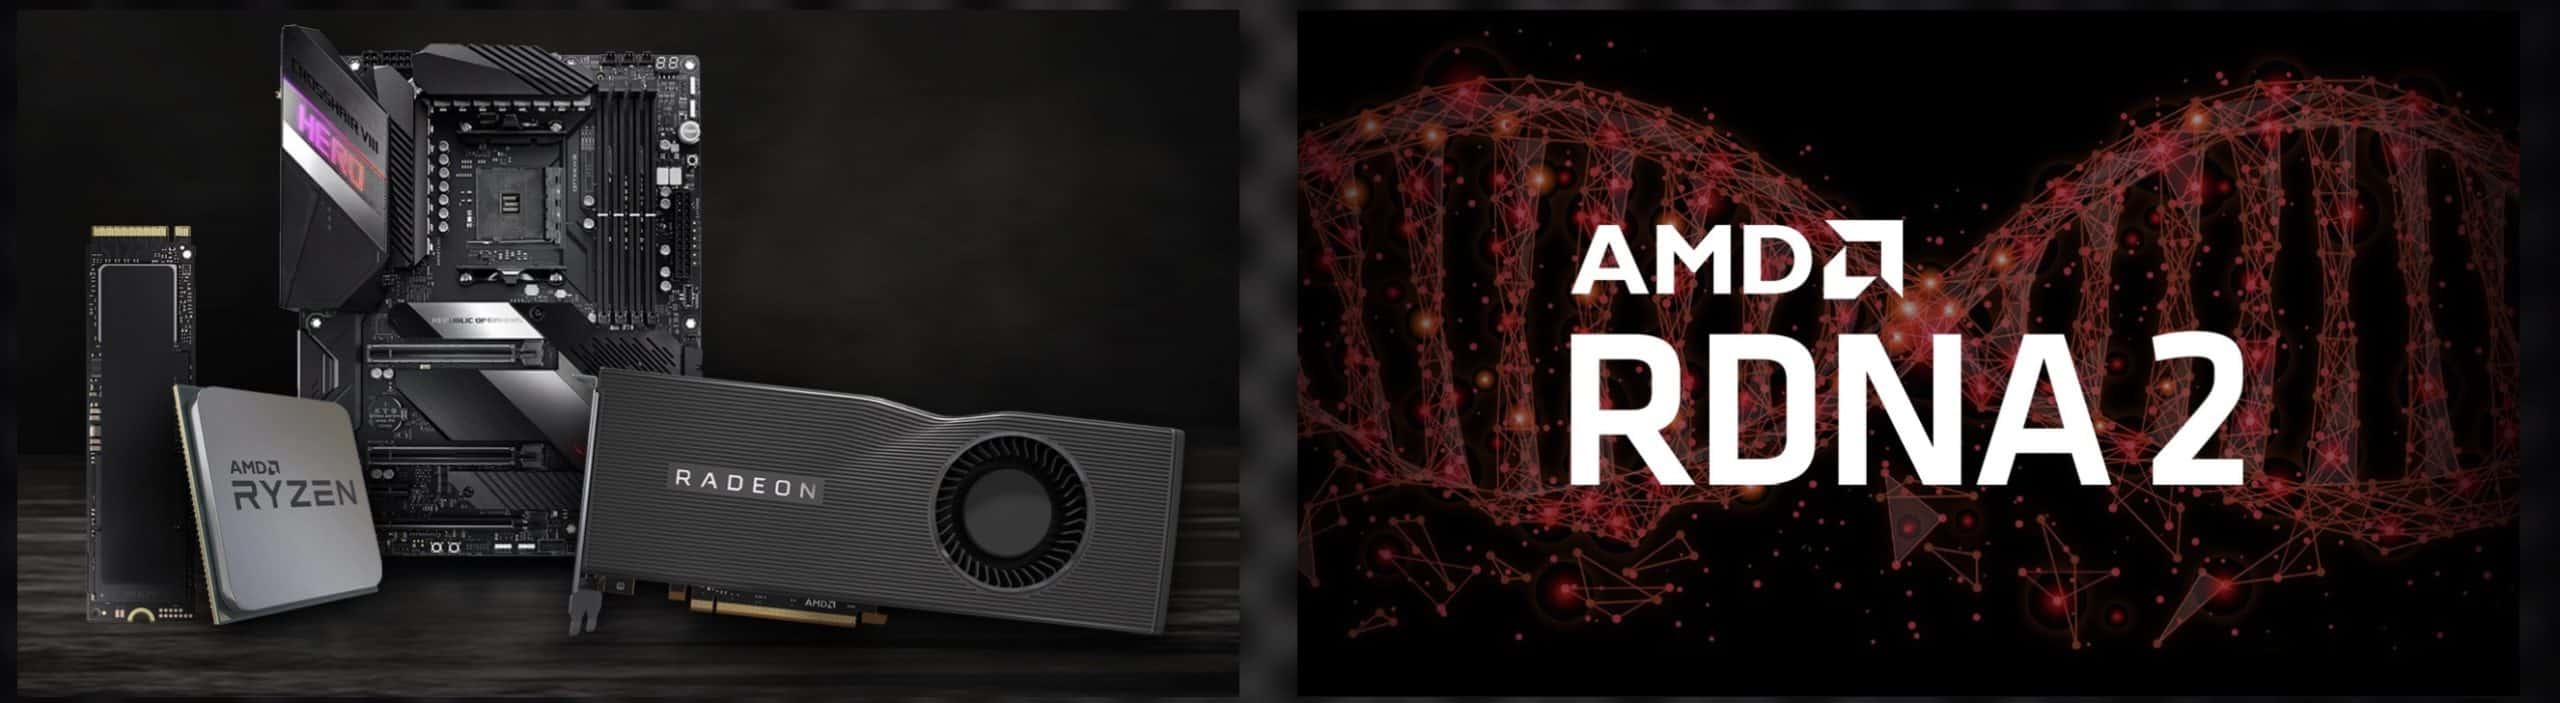 AMD announced the much awaited Ryzen 5000 series Desktop Processors